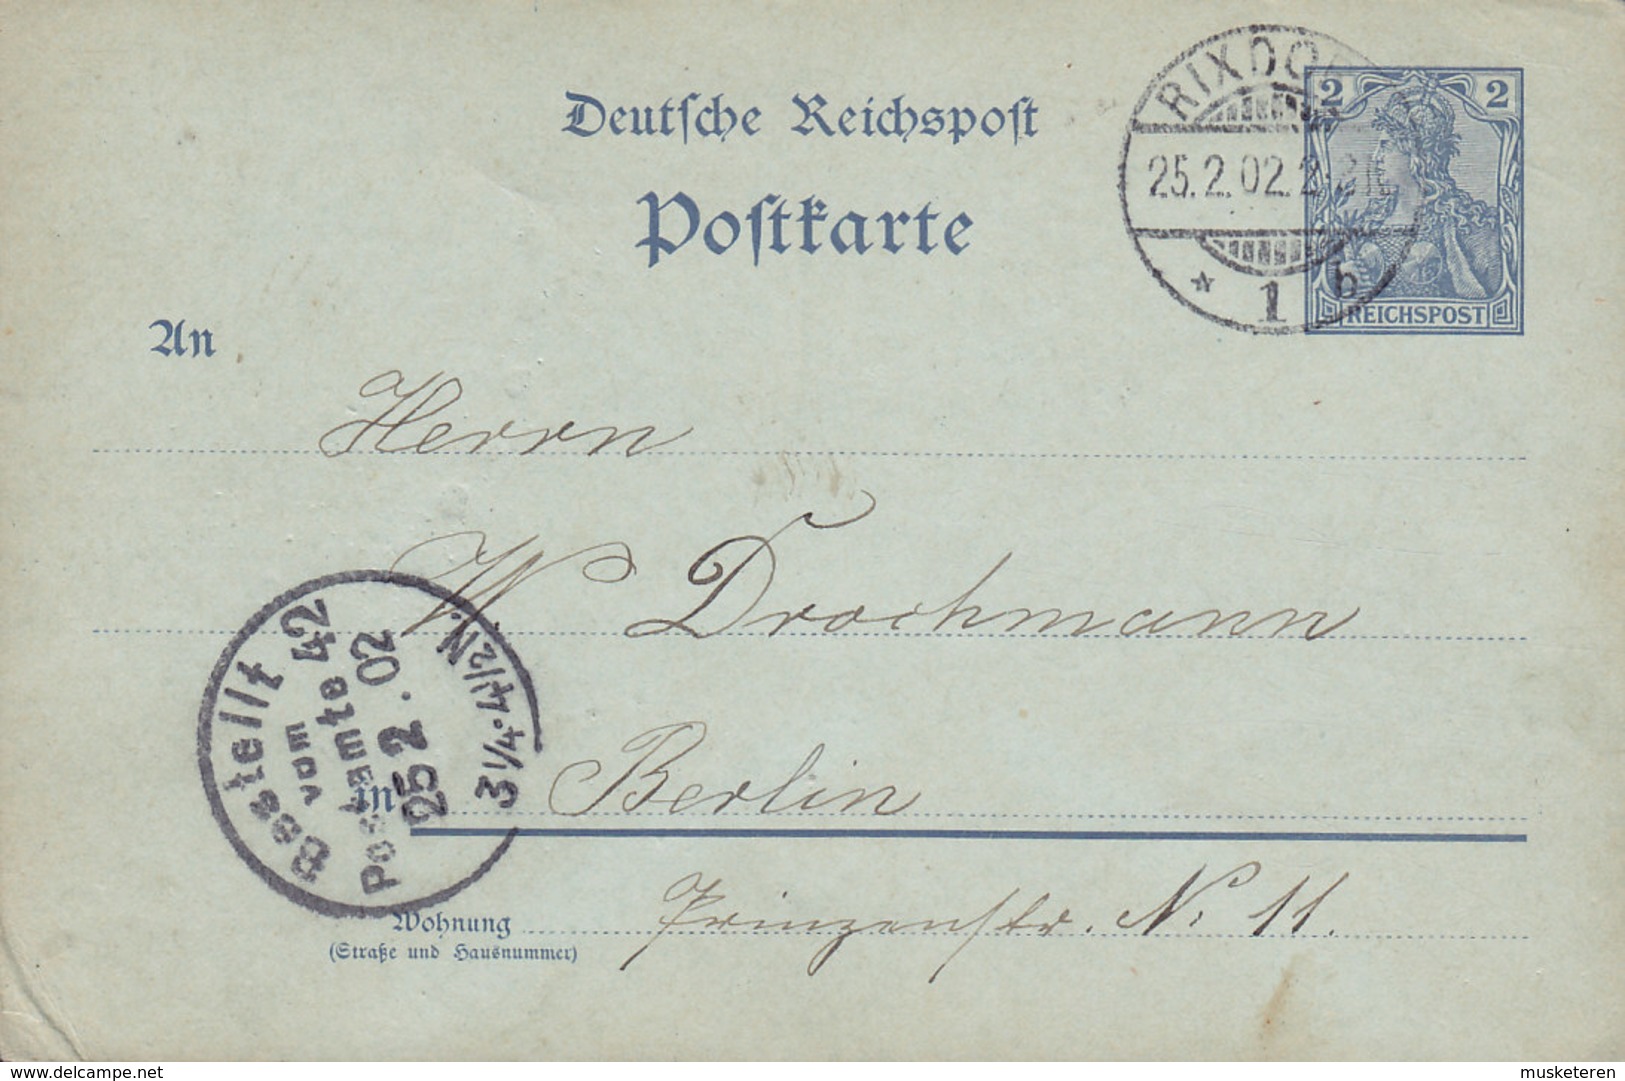 Deutsche Reichspost Postal Stationery Ganzsache Entier 2 Pf. Germania RIXDORF 1902 BERLIN (2 Scans) - Cartes Postales